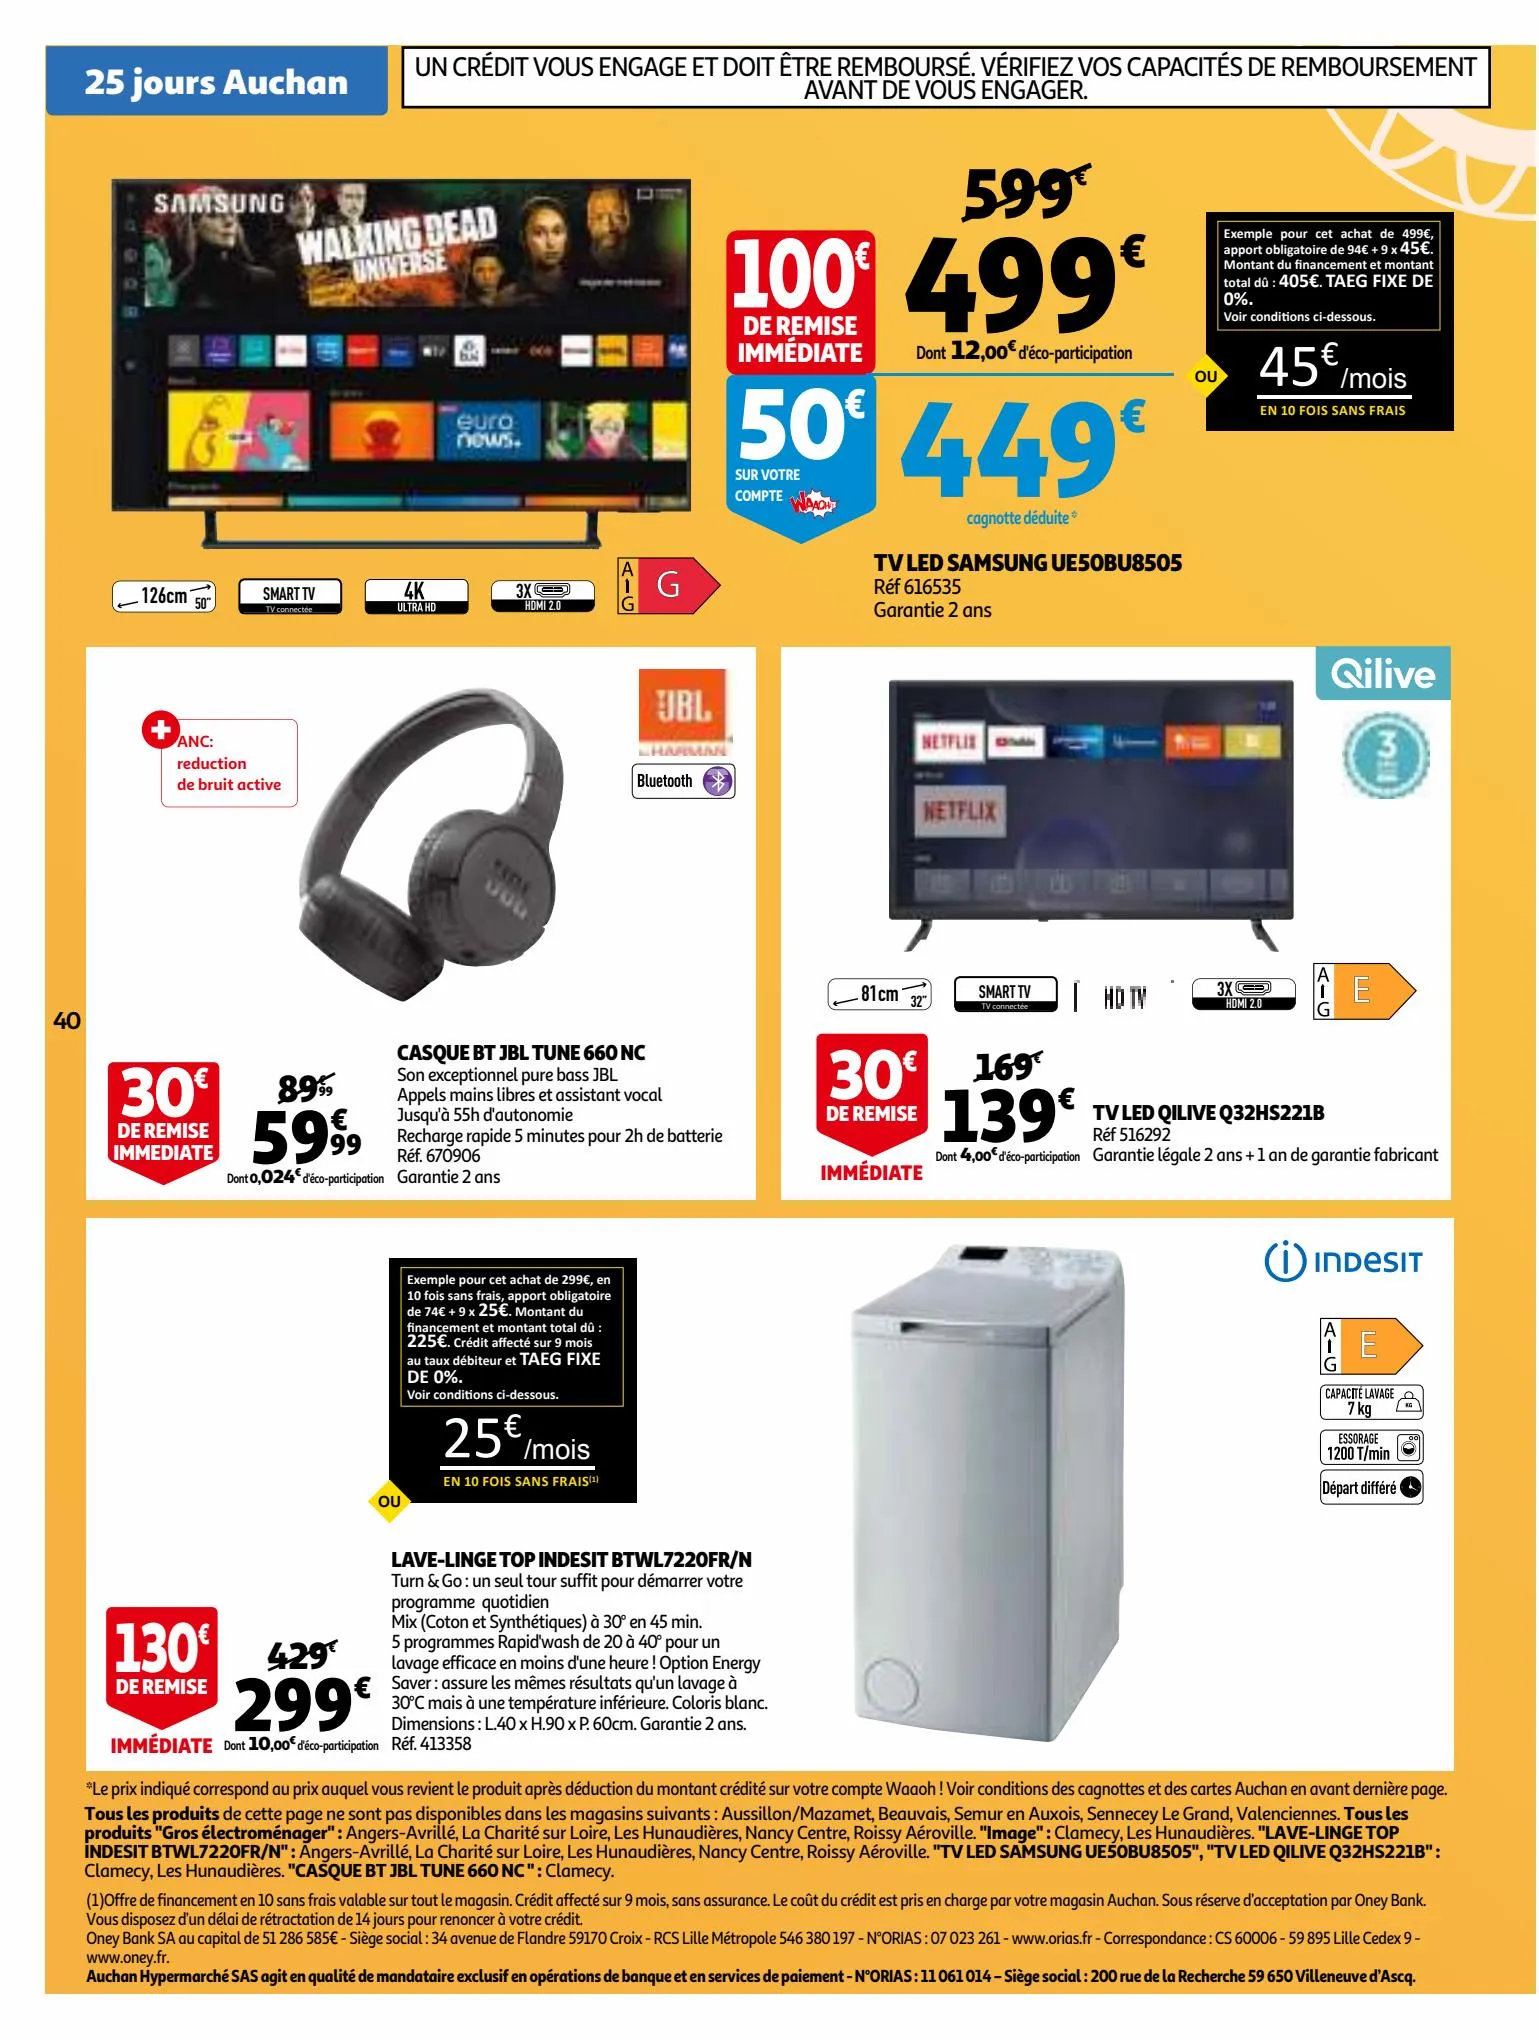 Catalogue 25 Jours Auchan, page 00040